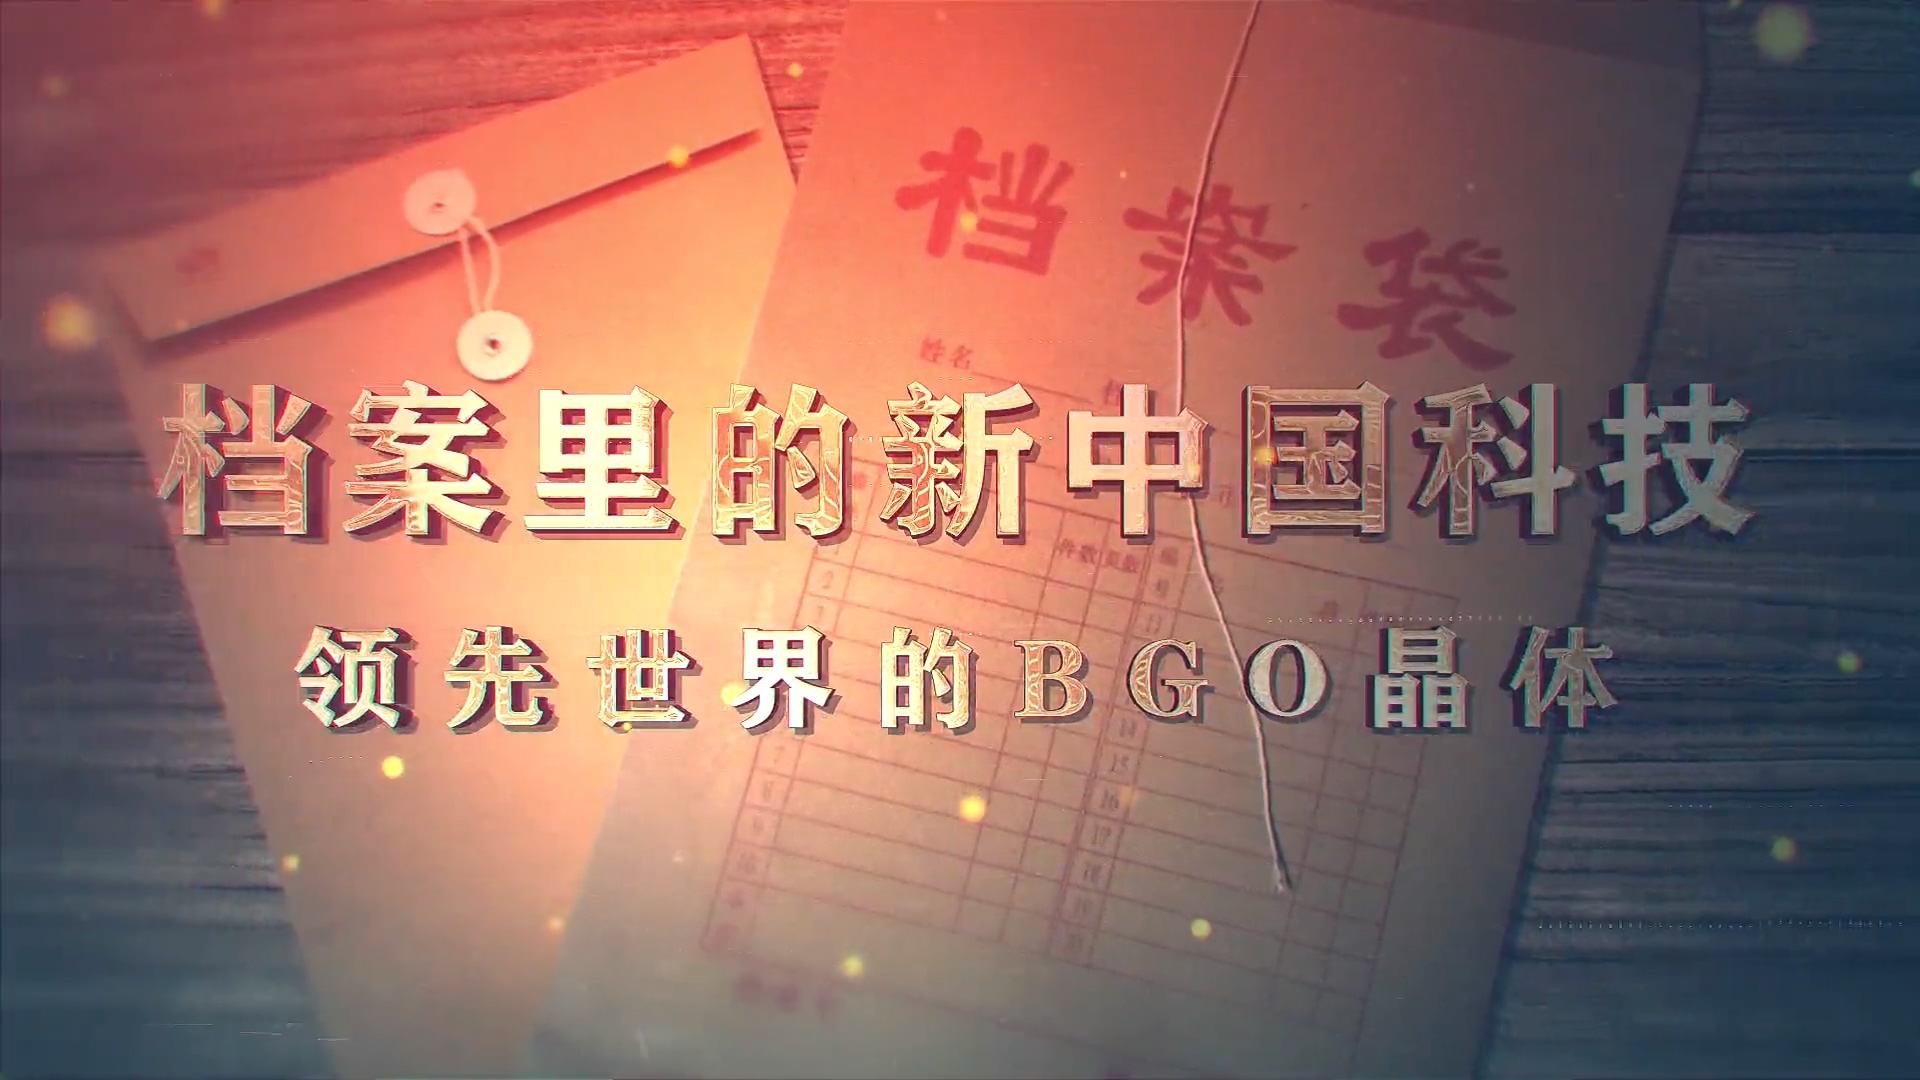 4.《档案里的新中国科技·领先世界的BGO晶体》